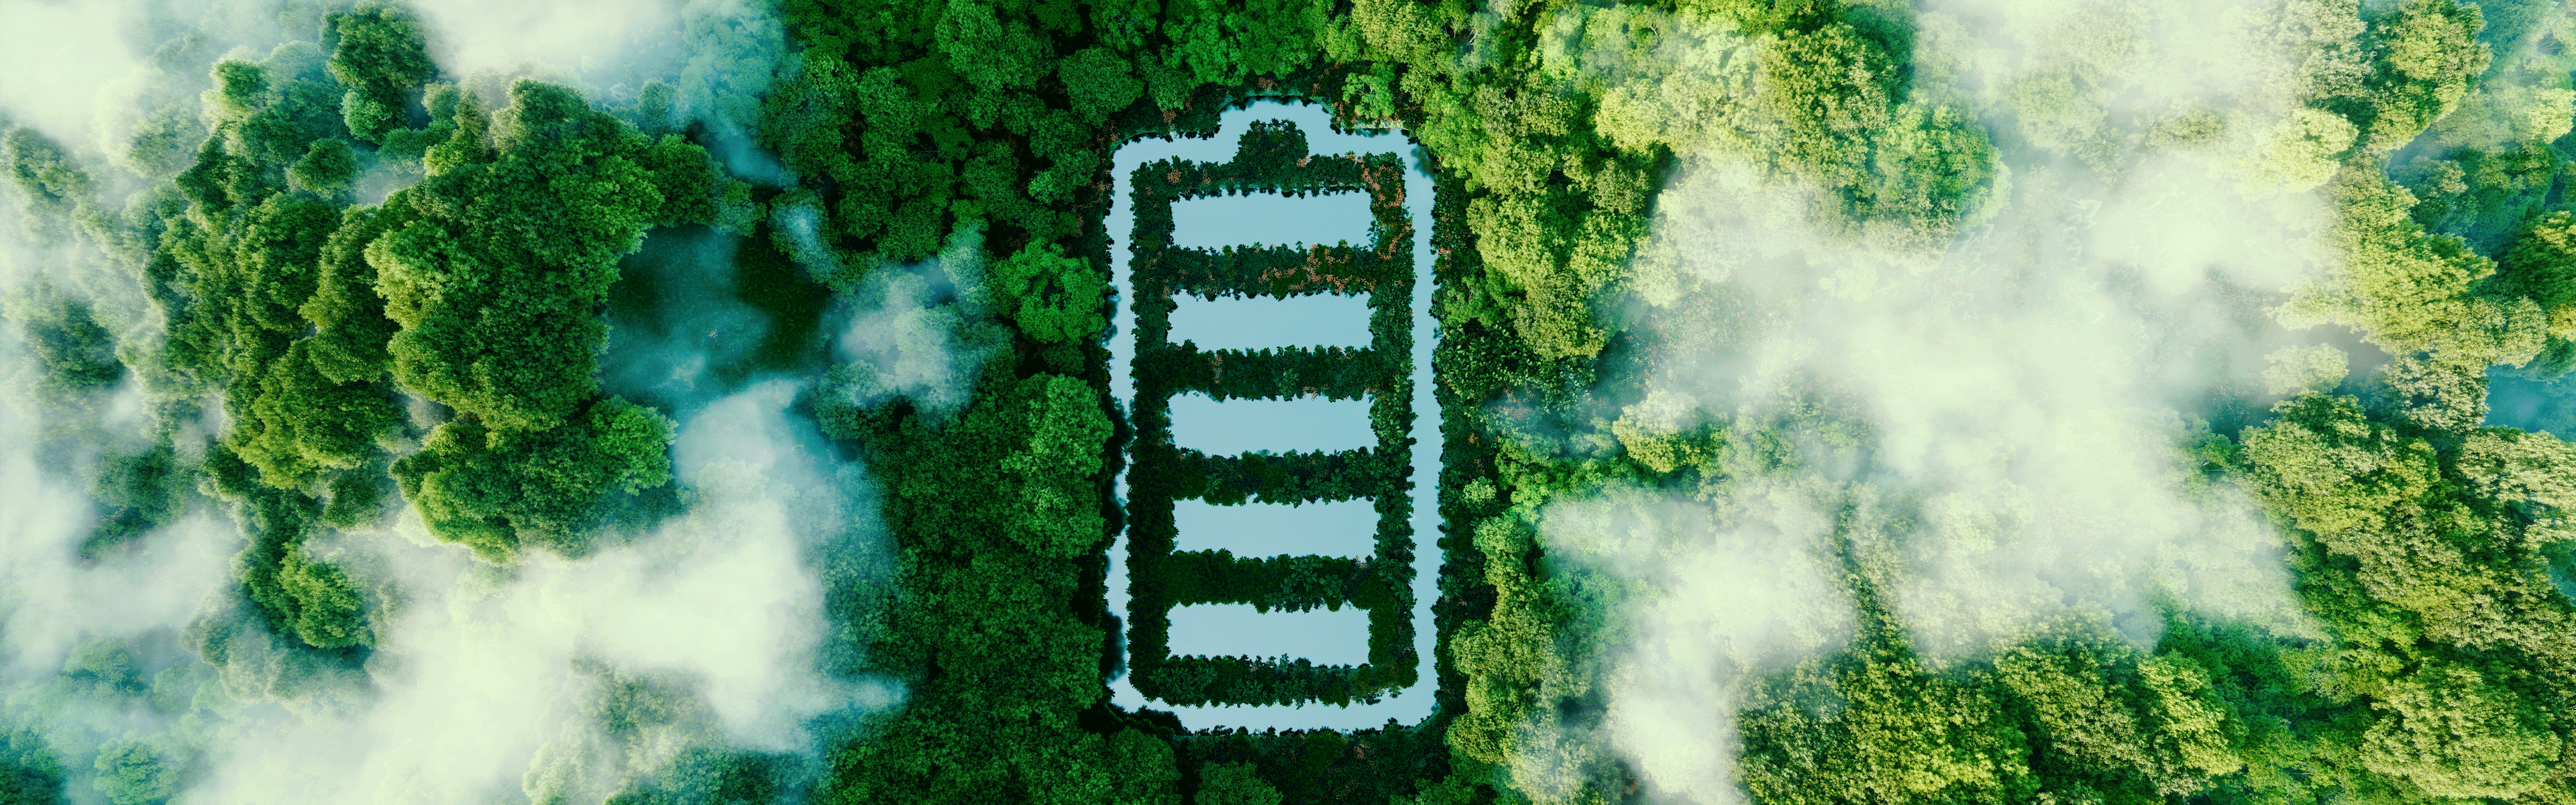 Batterieförmiger Teich im Wald aus der Vogelperspektive: Die von Alessandro Volta erfundene Batterie ist für die Energiezukunft von großer Bedeutung. (© petrmalinak/Shutterstock)